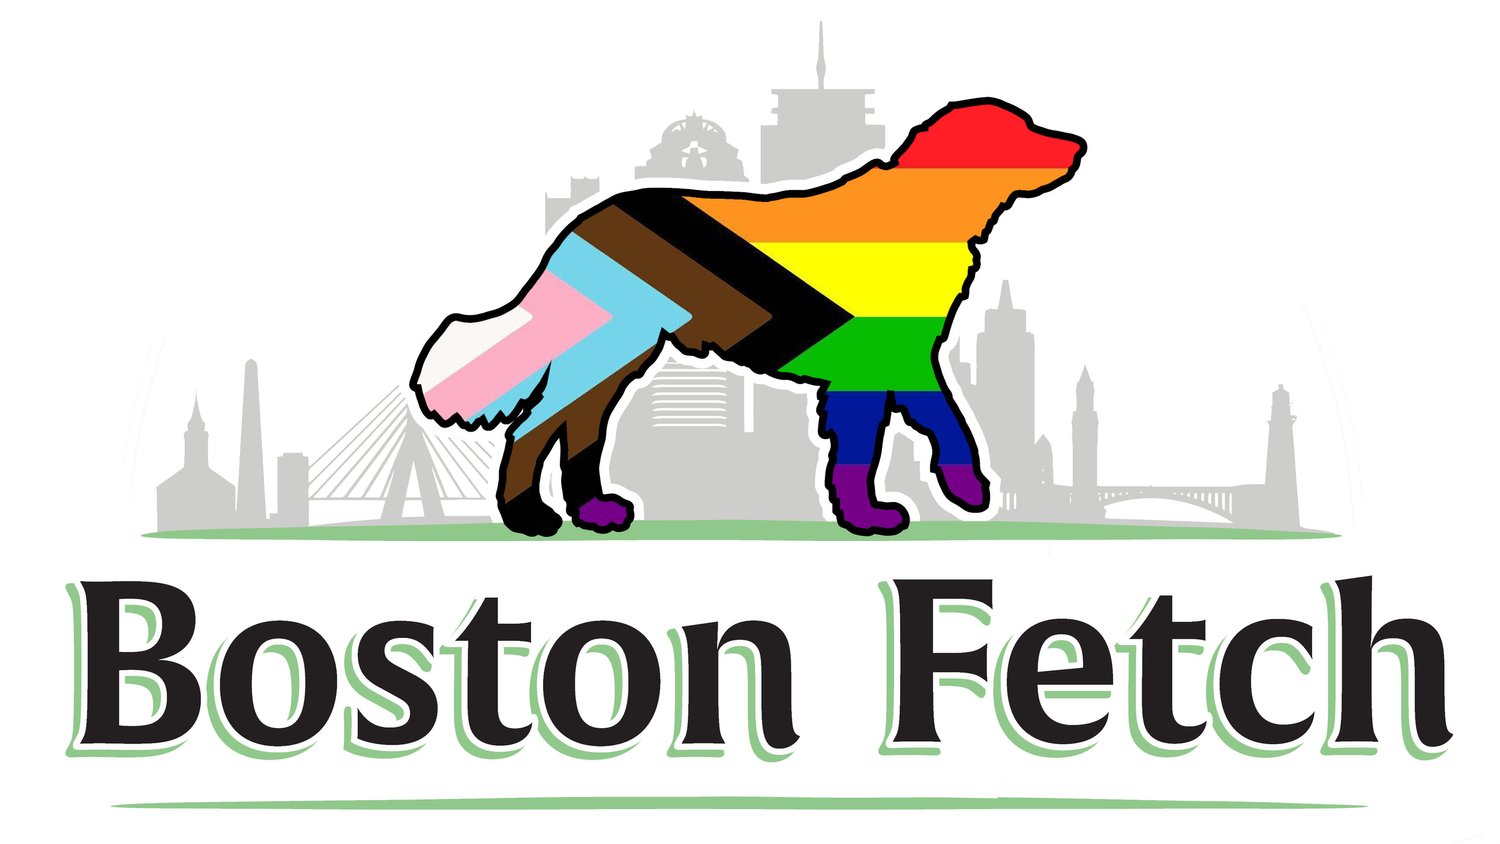 Boston Fetch